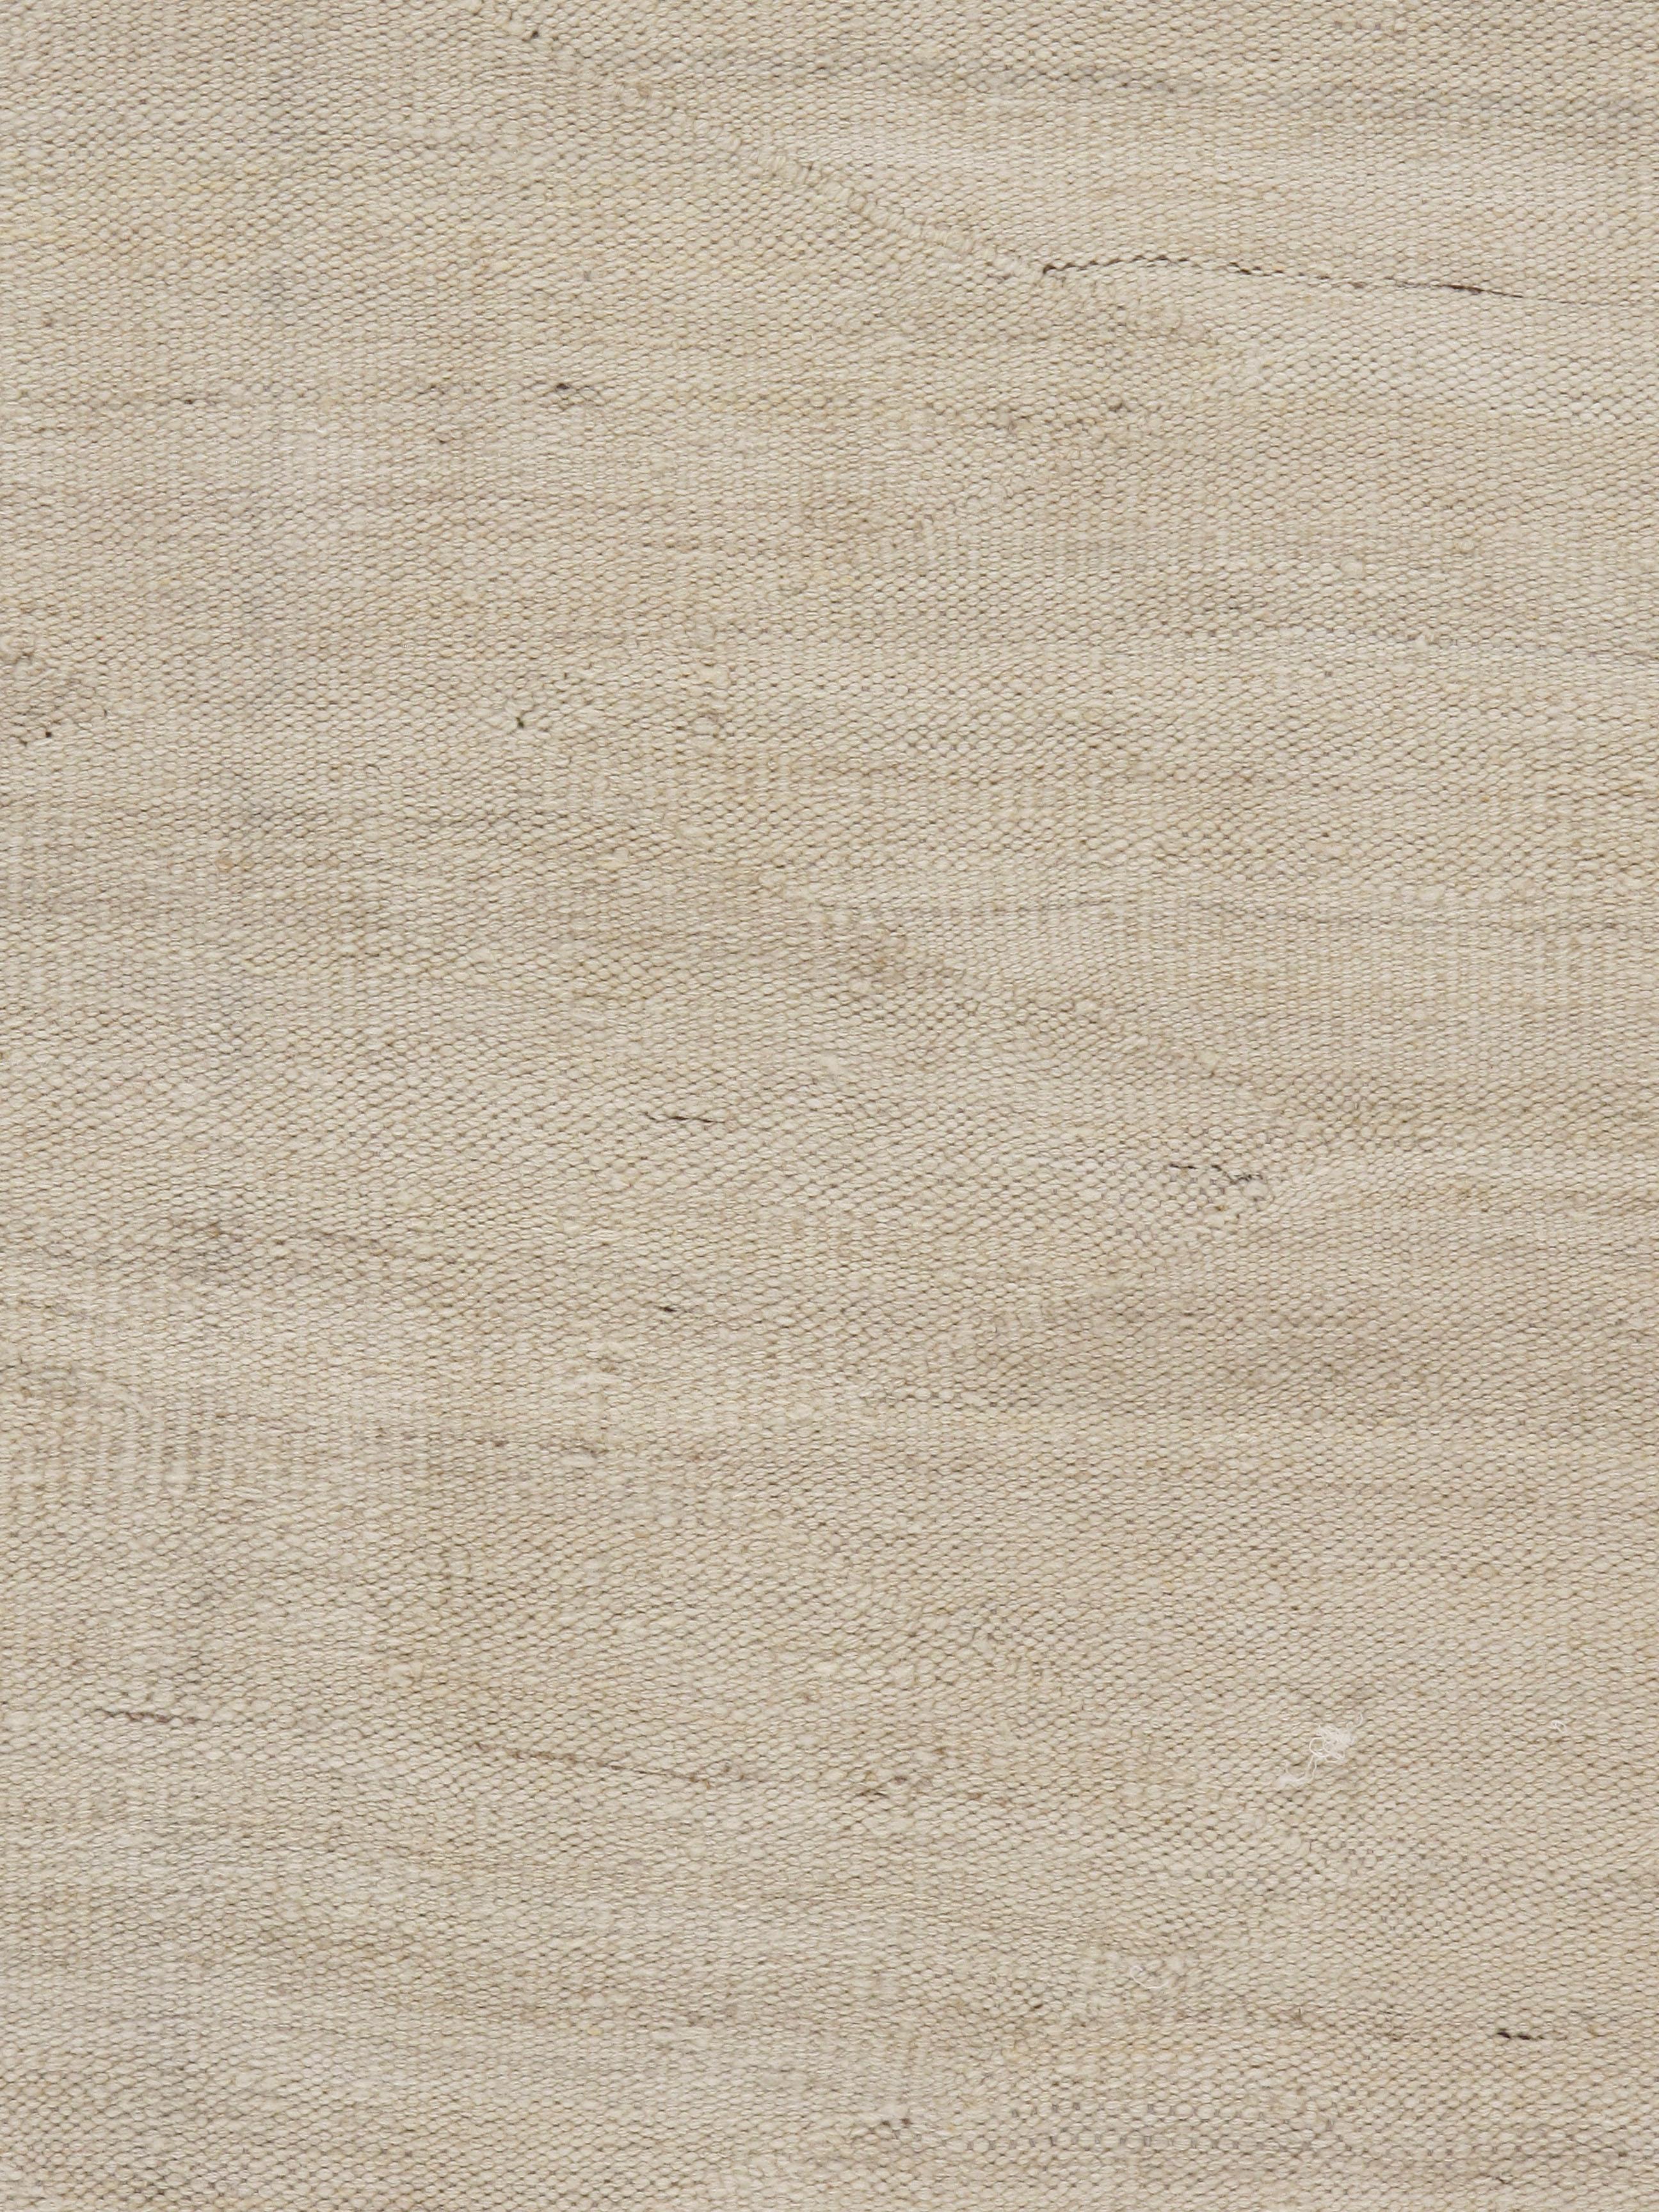 Moderner handgewebter elfenbein-beiger Kelim-Teppich, 9'2 x 11'9. Handgewebter Kelim in natürlichem Elfenbein und Beige. Die Schlichtheit und Kühnheit dieses Stücks verleiht ihm ein zeitgenössisches Flair und kann sowohl in einem modernen als auch